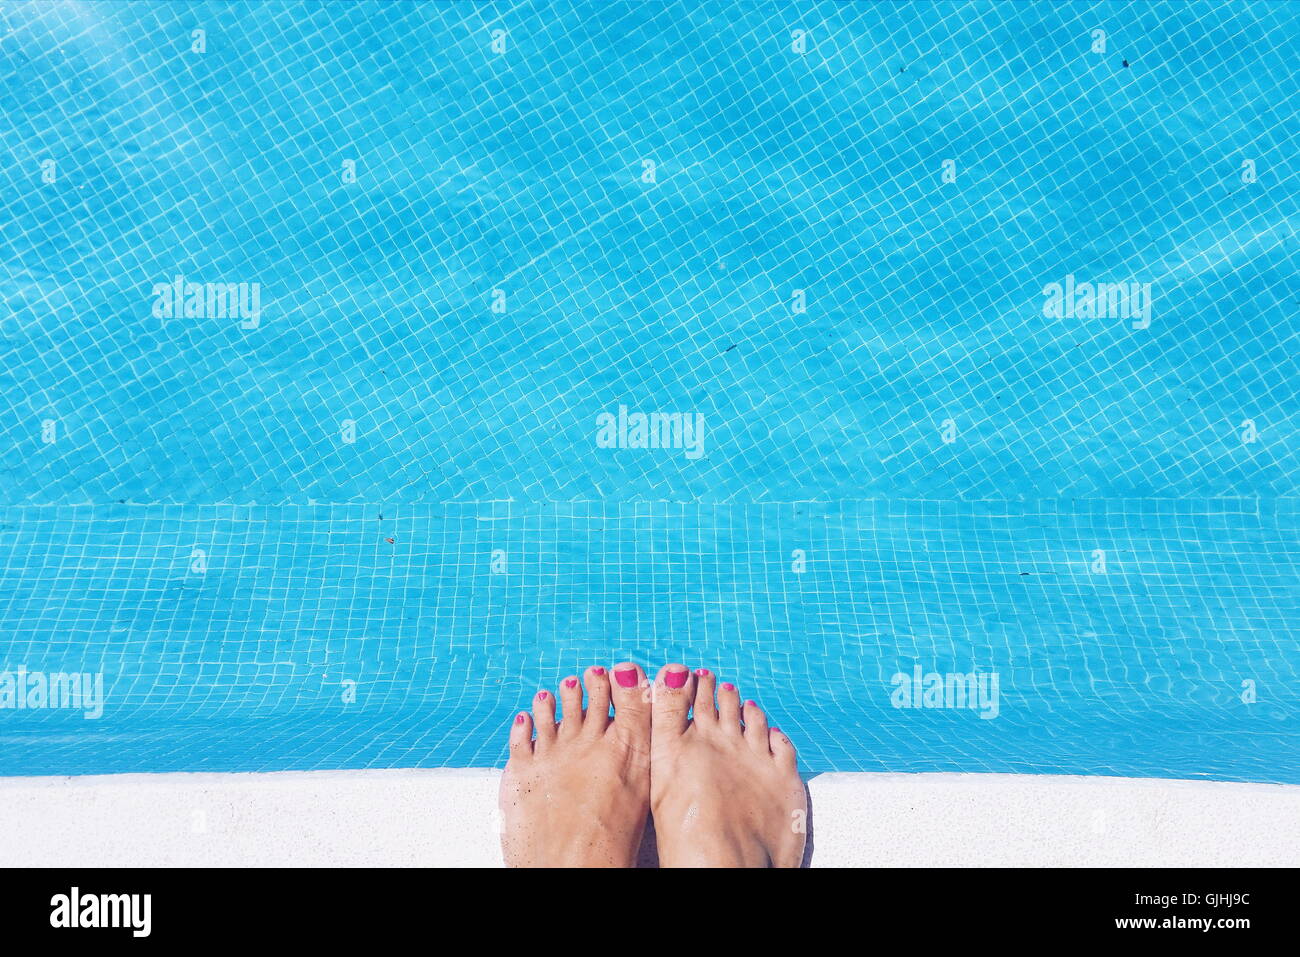 Close-up of a woman's feet au bord d'une piscine Banque D'Images